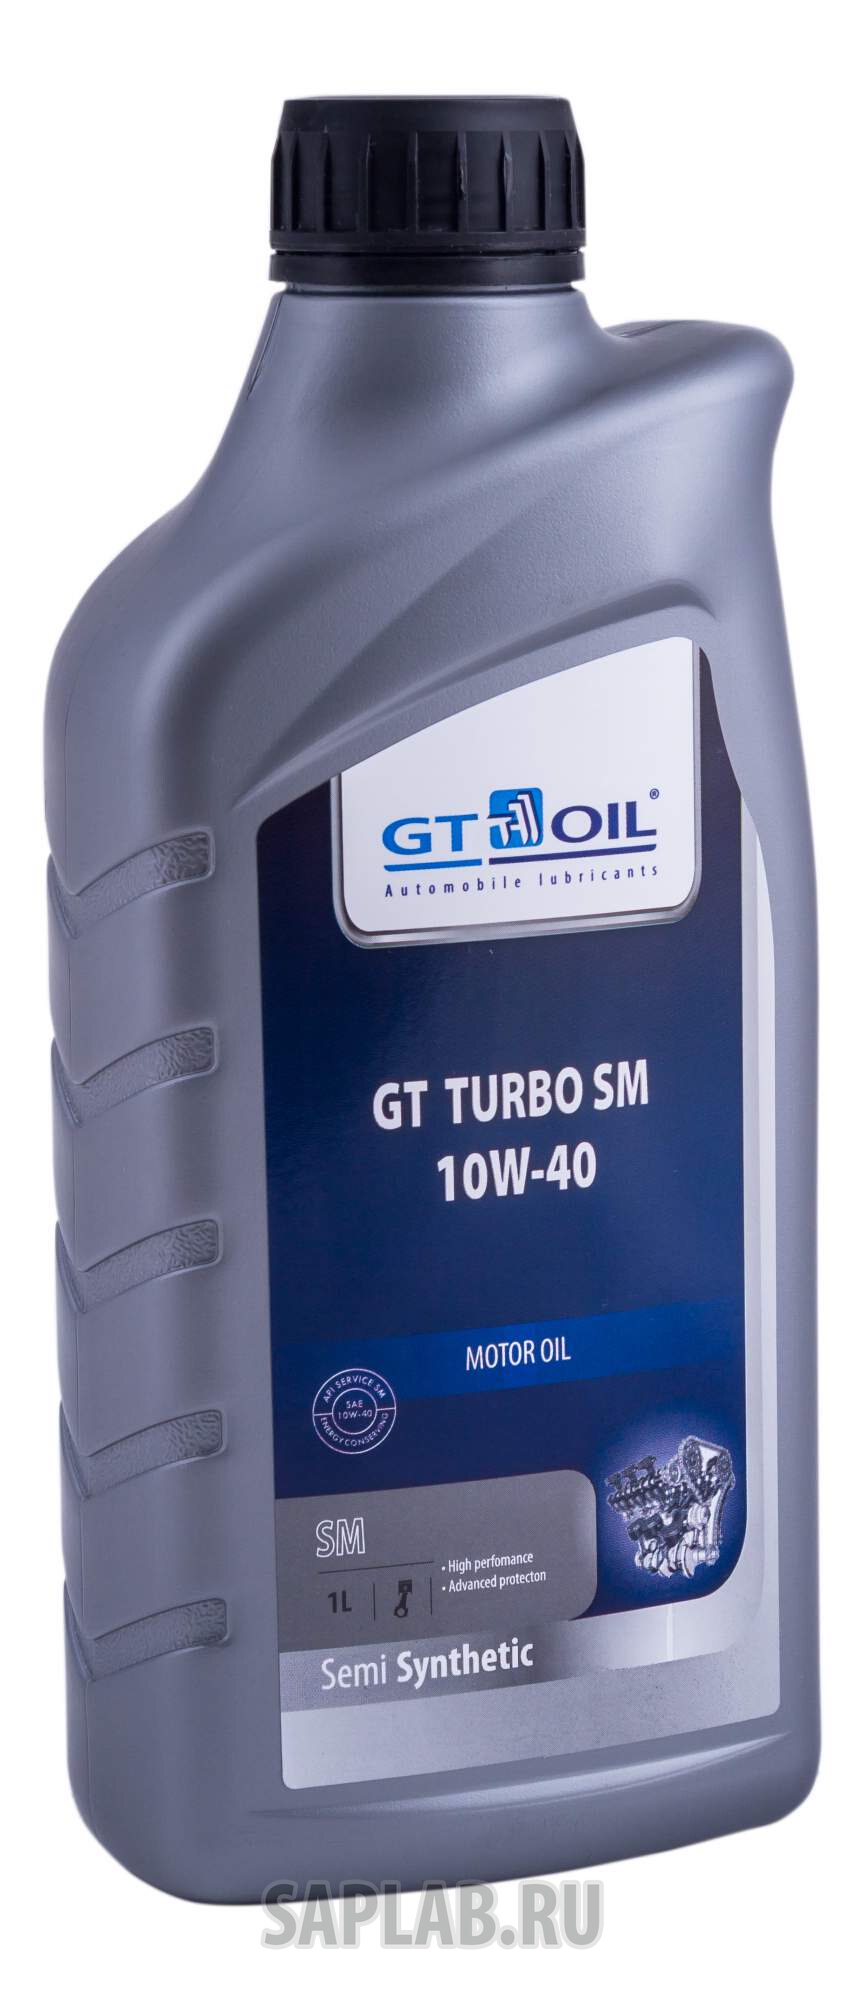 Купить запчасть GT OIL - 8809059407011 GT Turbo SM SAE 10W-40 (1л)